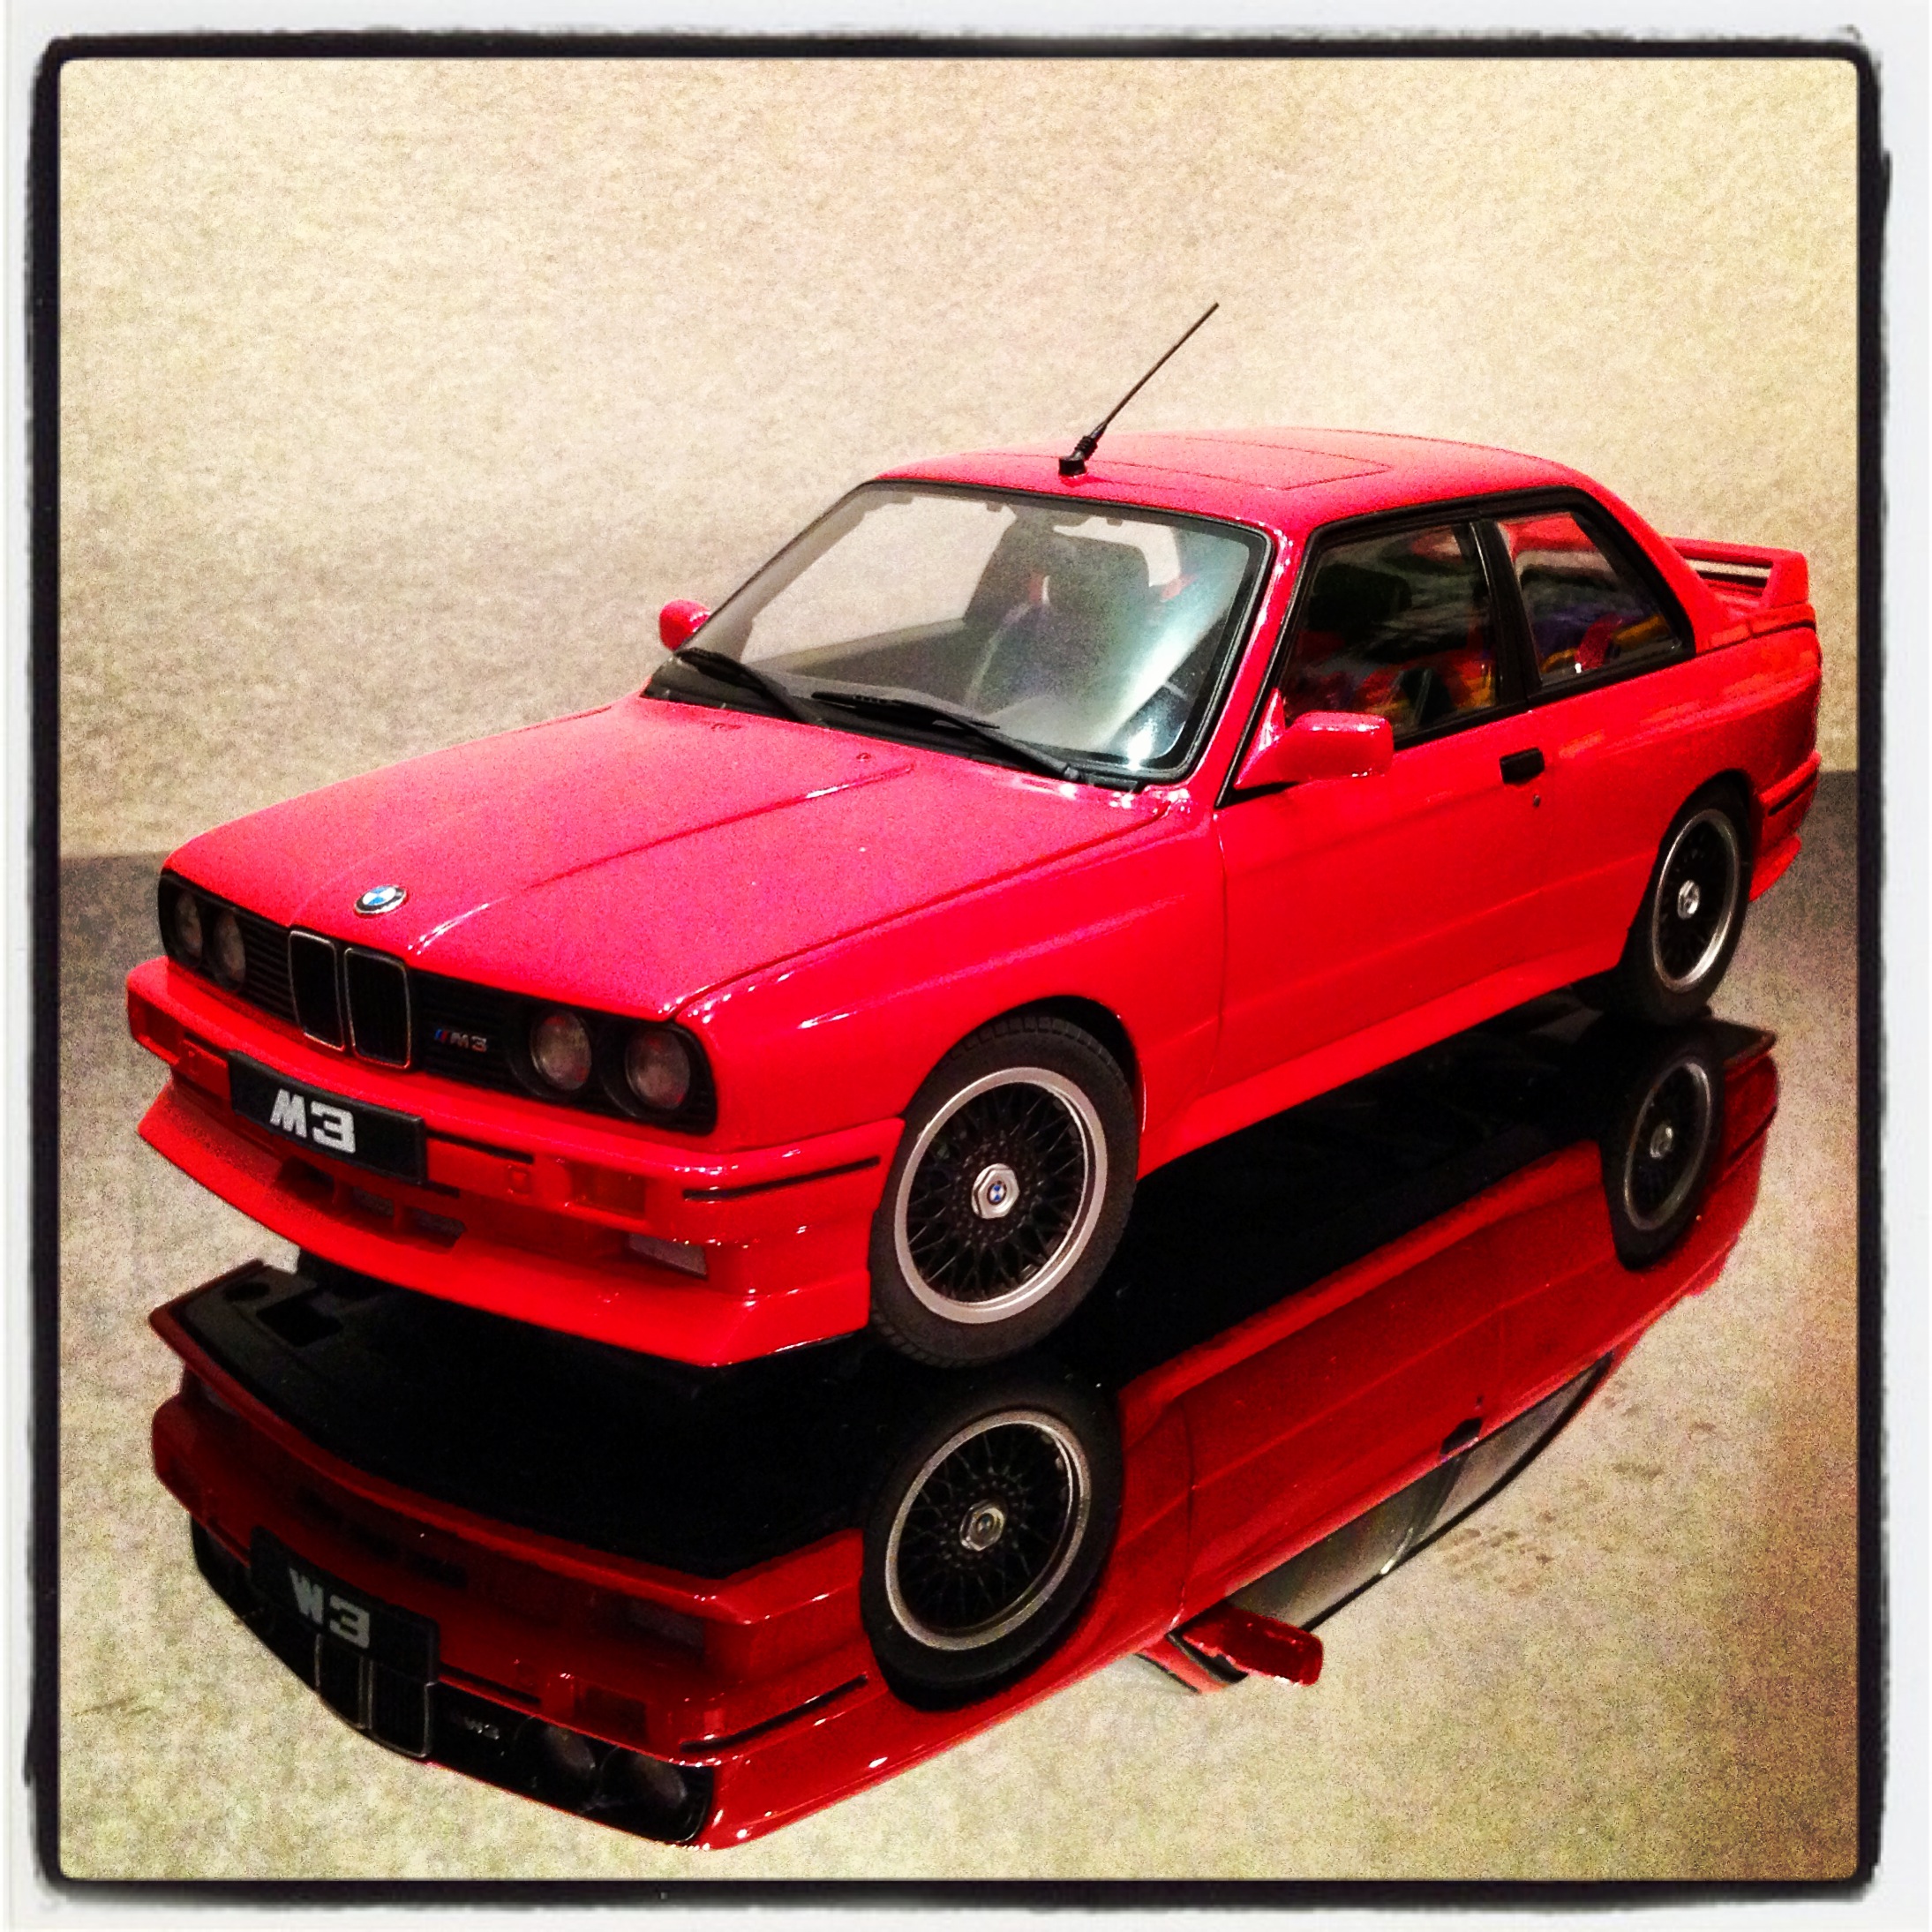 BMW M3 (E30) sport evolution, Cecotto edition 1989, red (autoart)